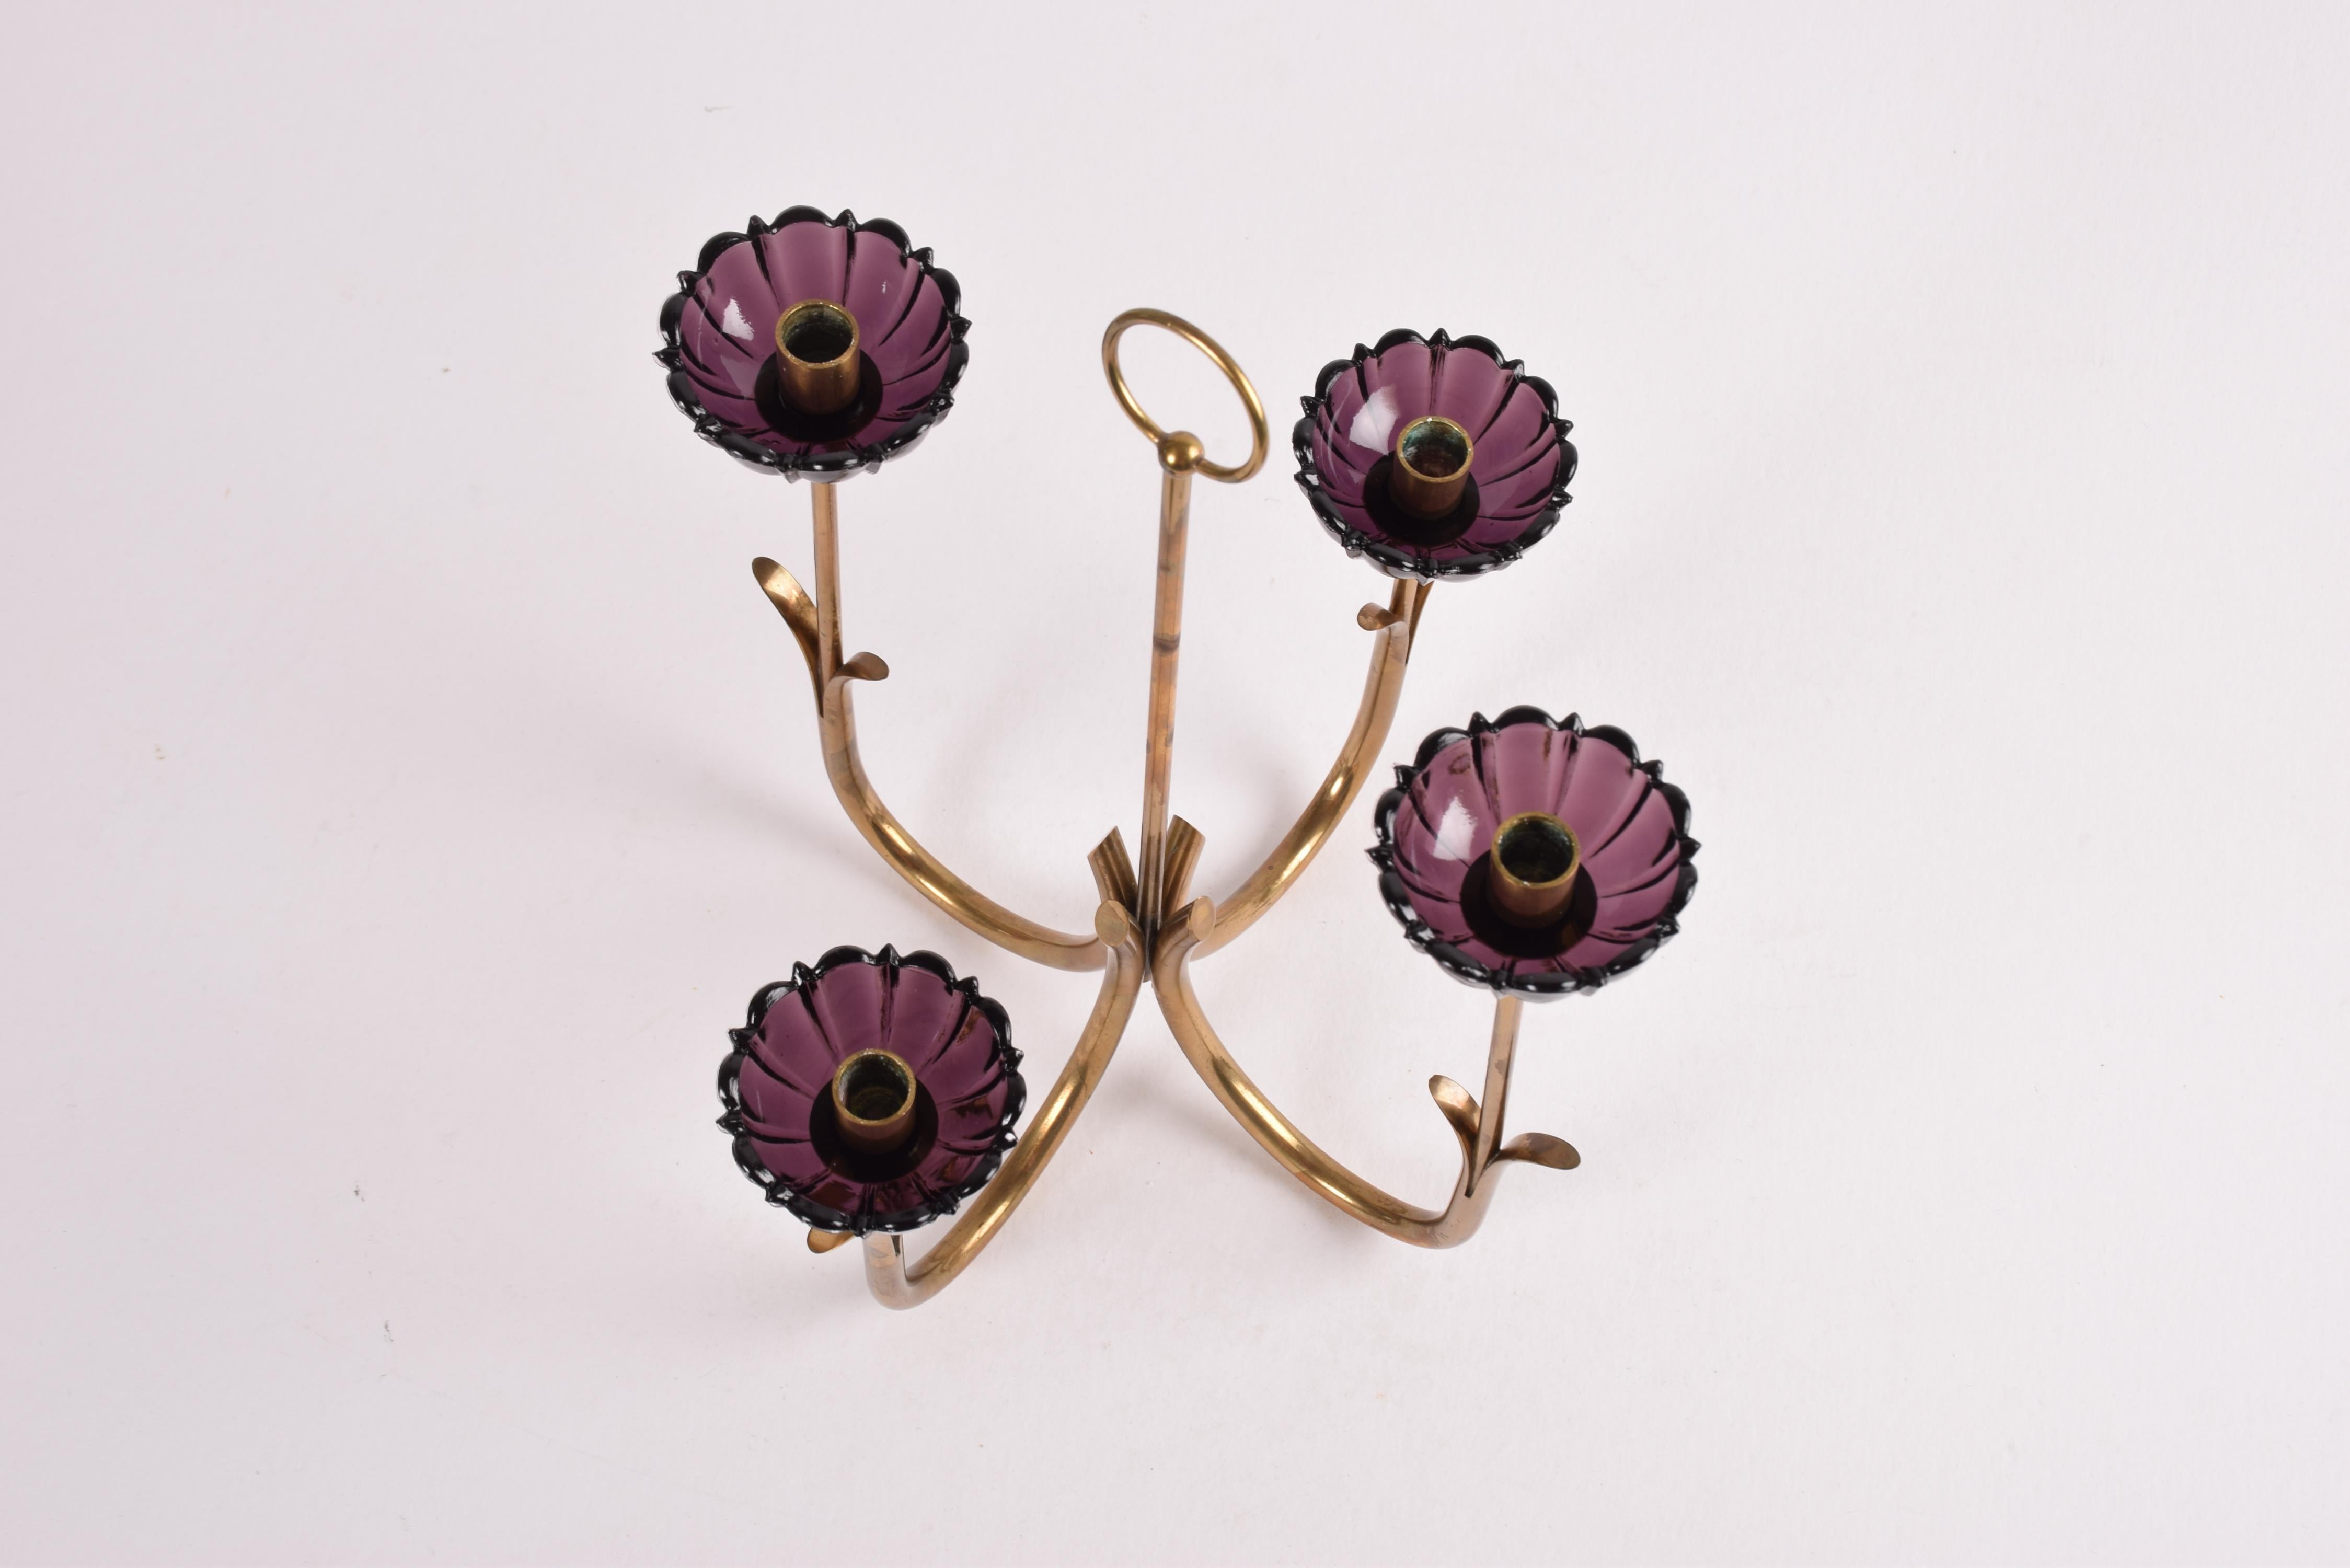 Gunnar Ander 4 Flower Candelabra Brass & Purple Glass, Ystad Metall Sweden 1960s For Sale 2